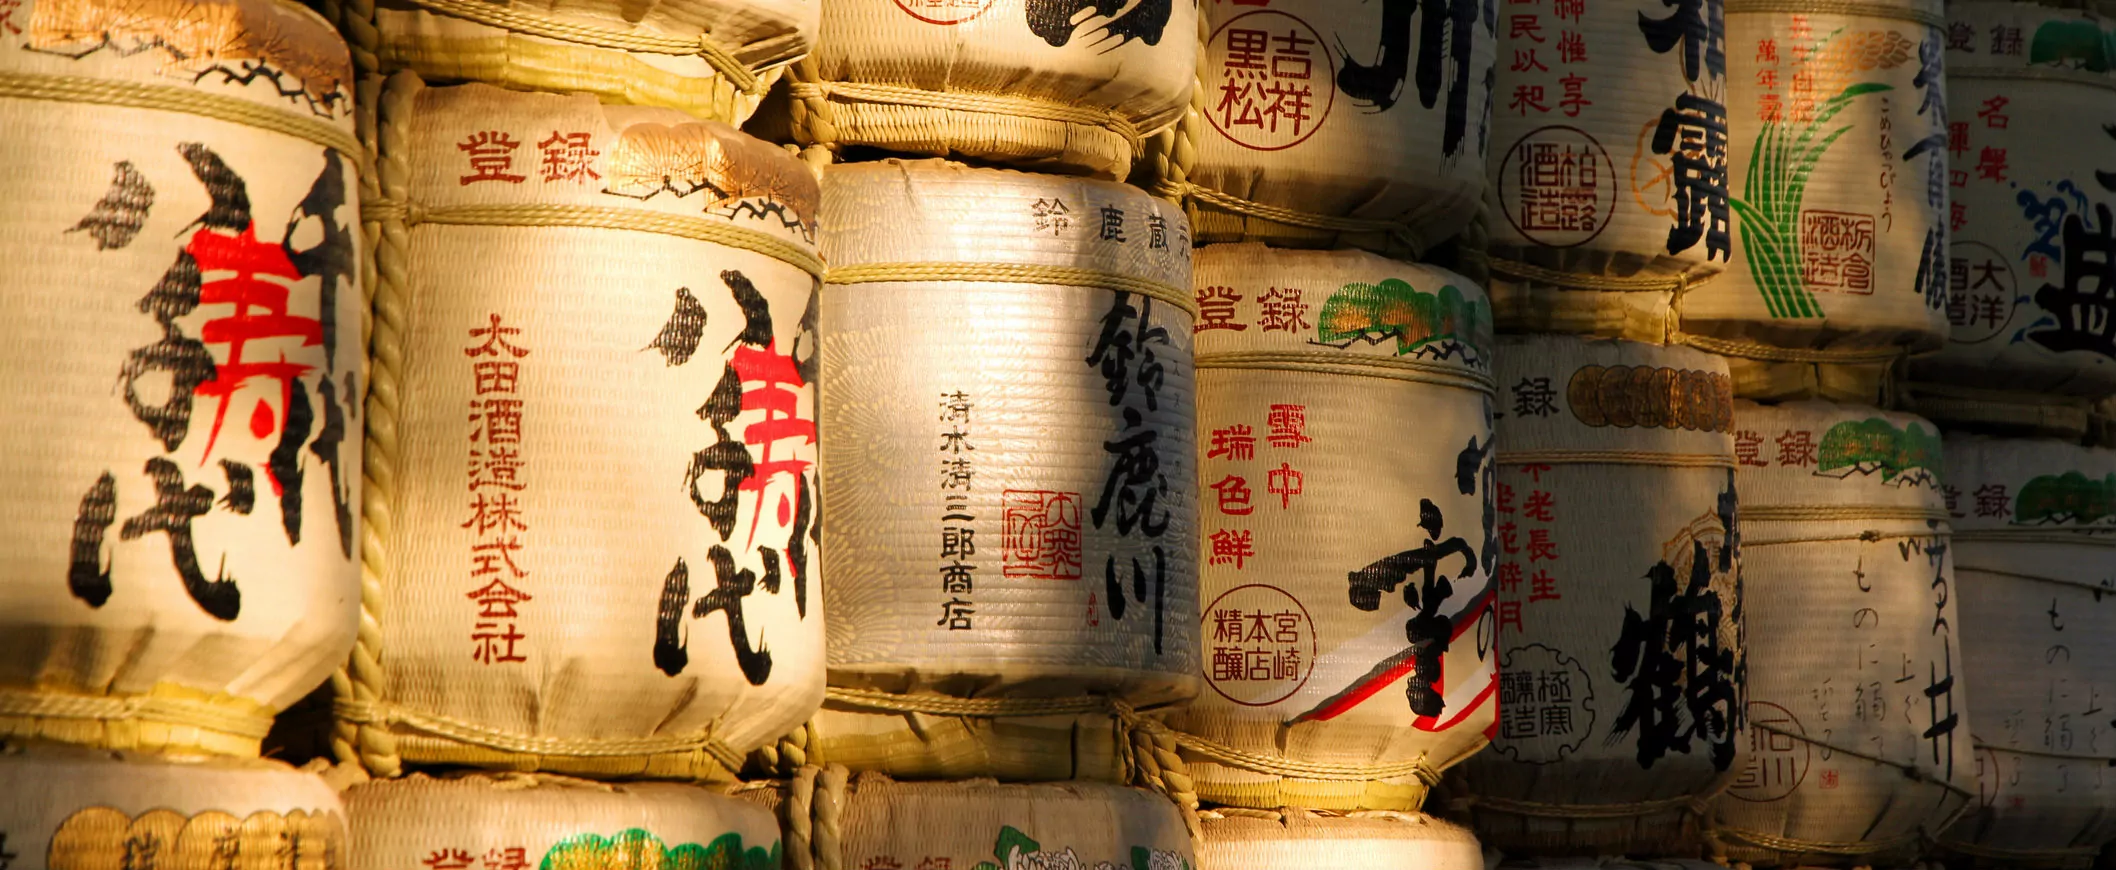 Cultura do Japão: conheça uma fábrica de sake